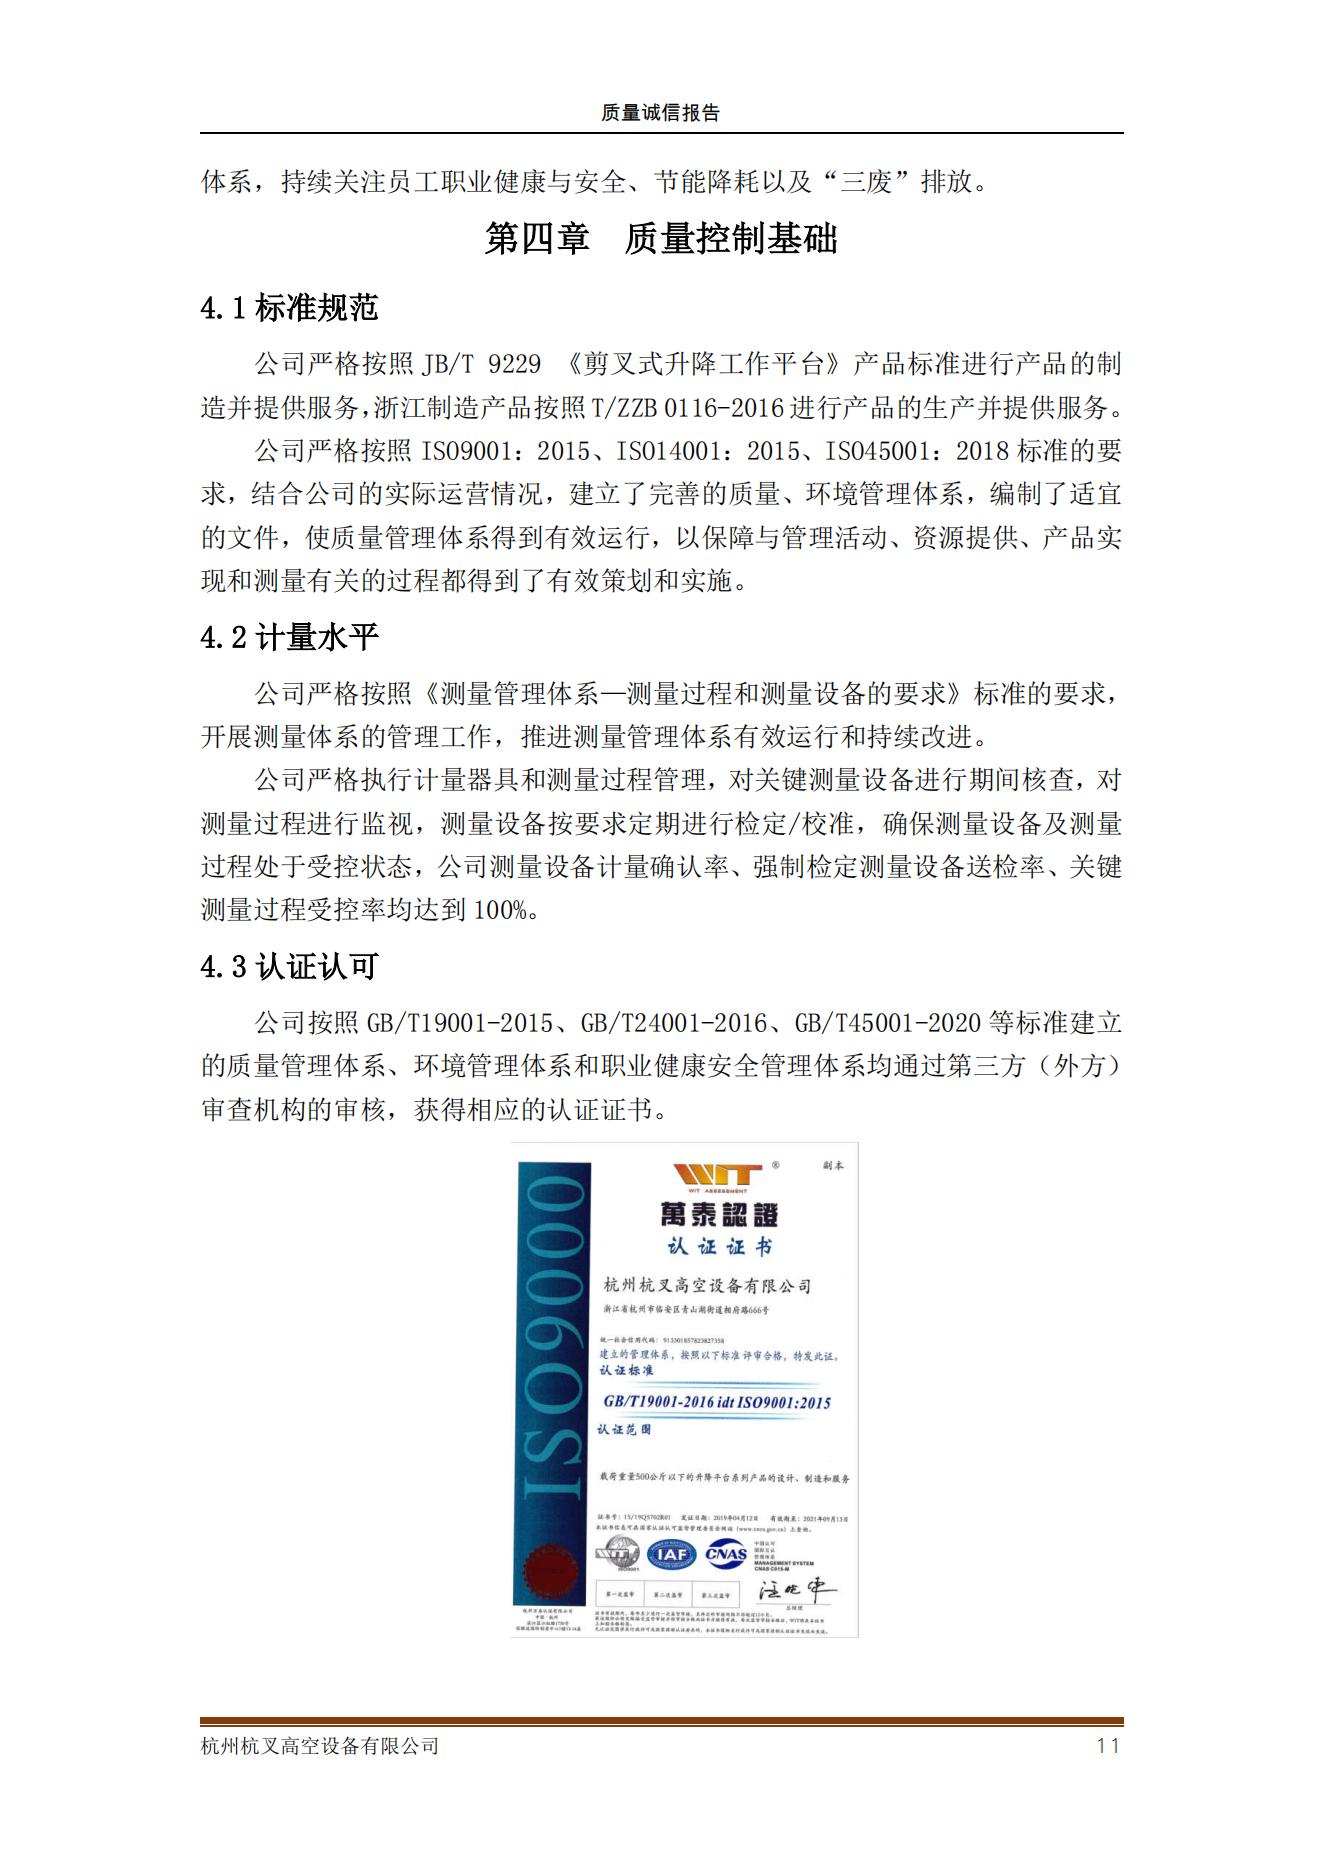 杭州杭叉高空設備公司2021年質量誠信報告(圖11)